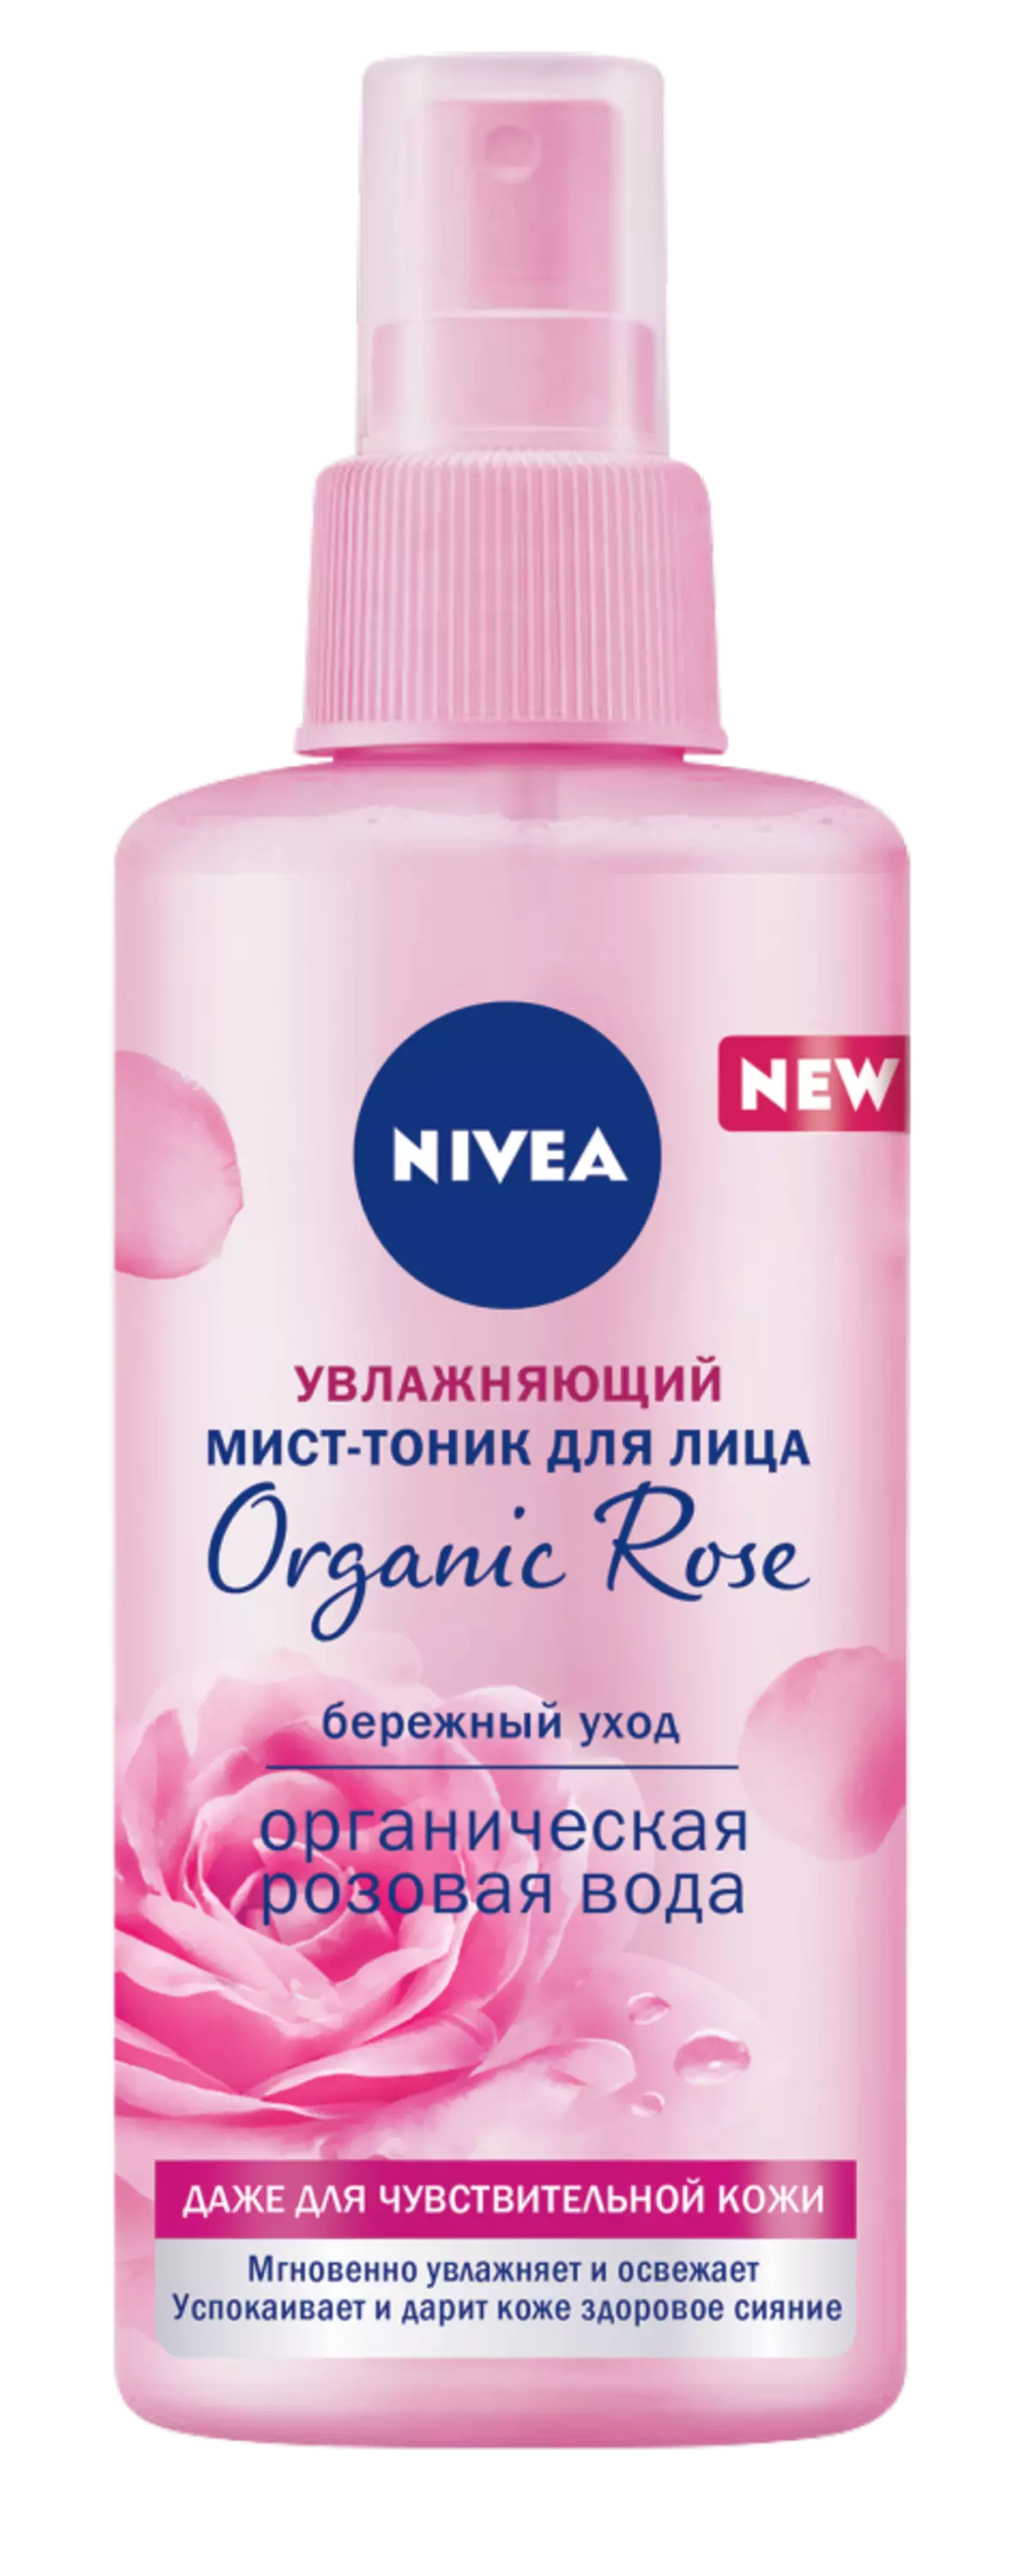 Сіла навукі і прыроды: новая лінейка Organic Rose ад NIVEA c ружовай вадой і гиалуроном 18545_3